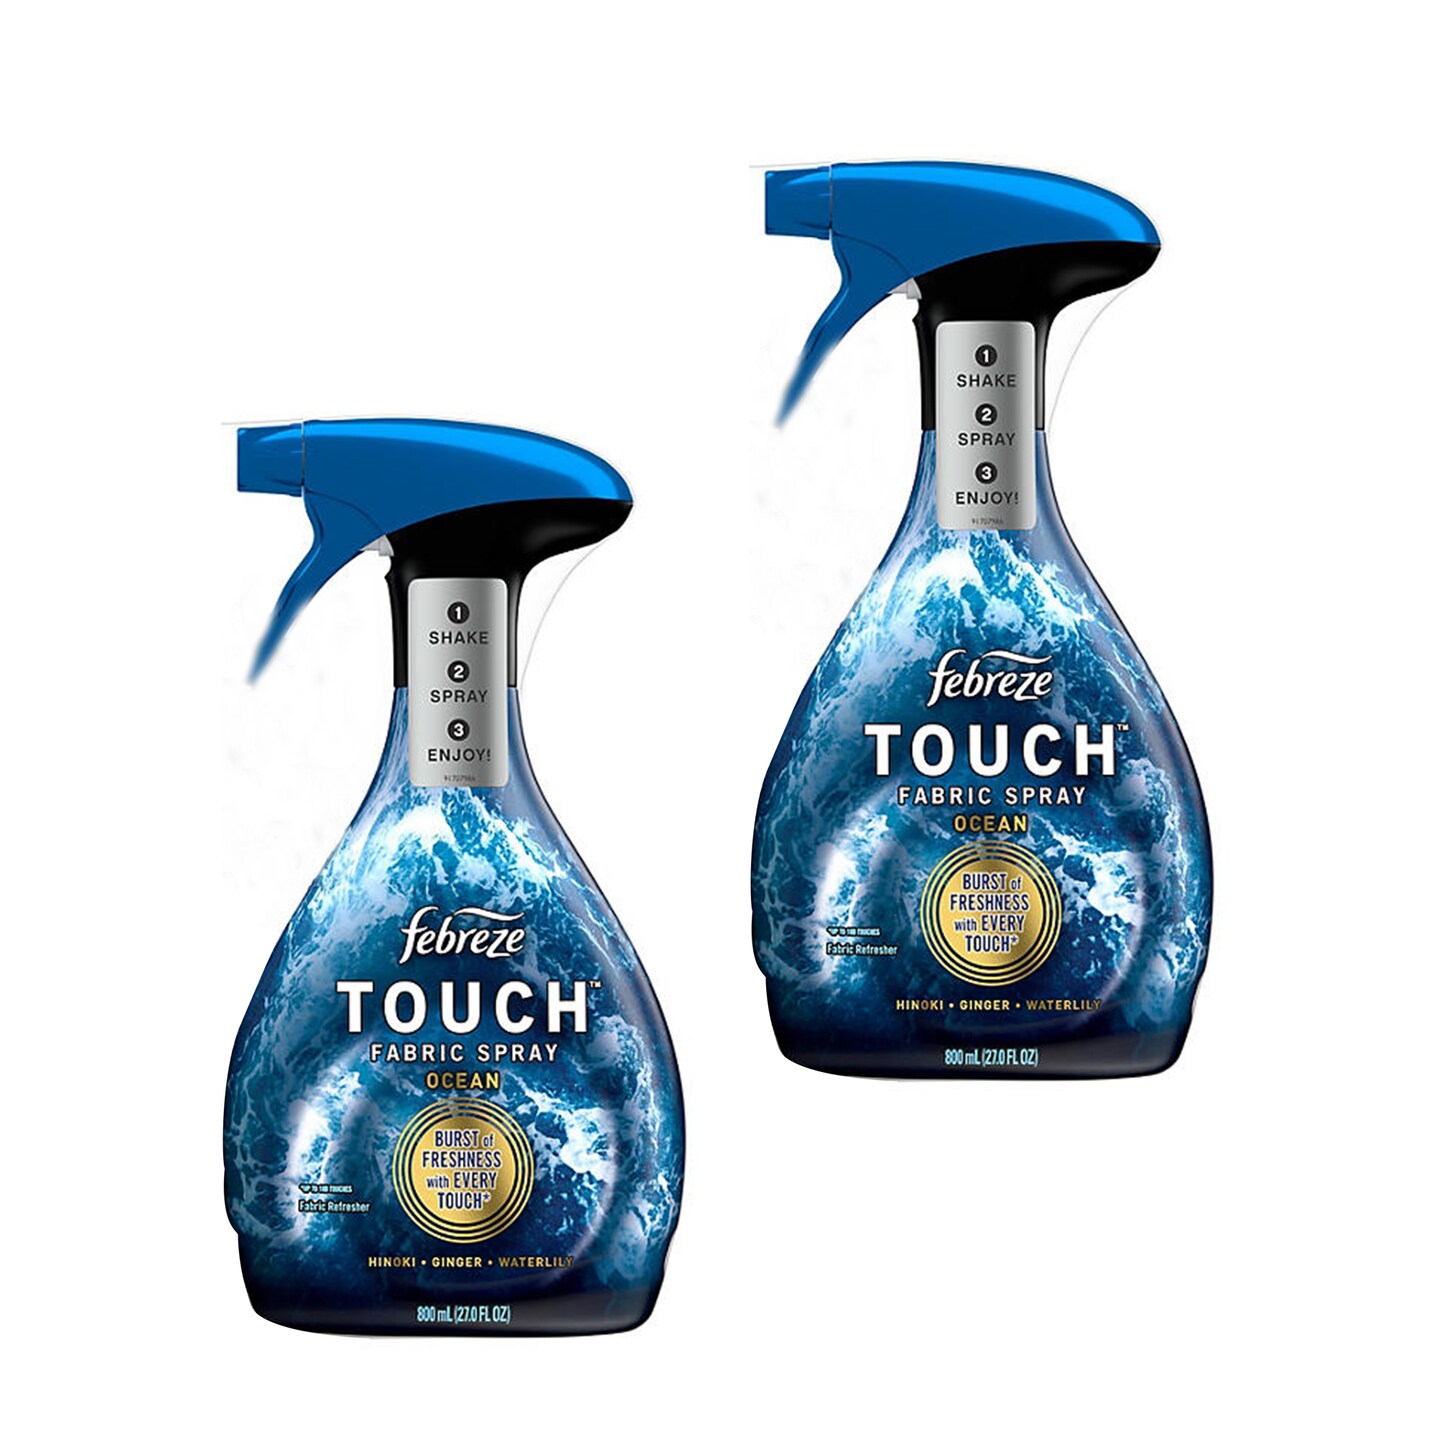 Febreze Touch Ocean Fabric Refresher Fabric Spray, 27.0 fl oz